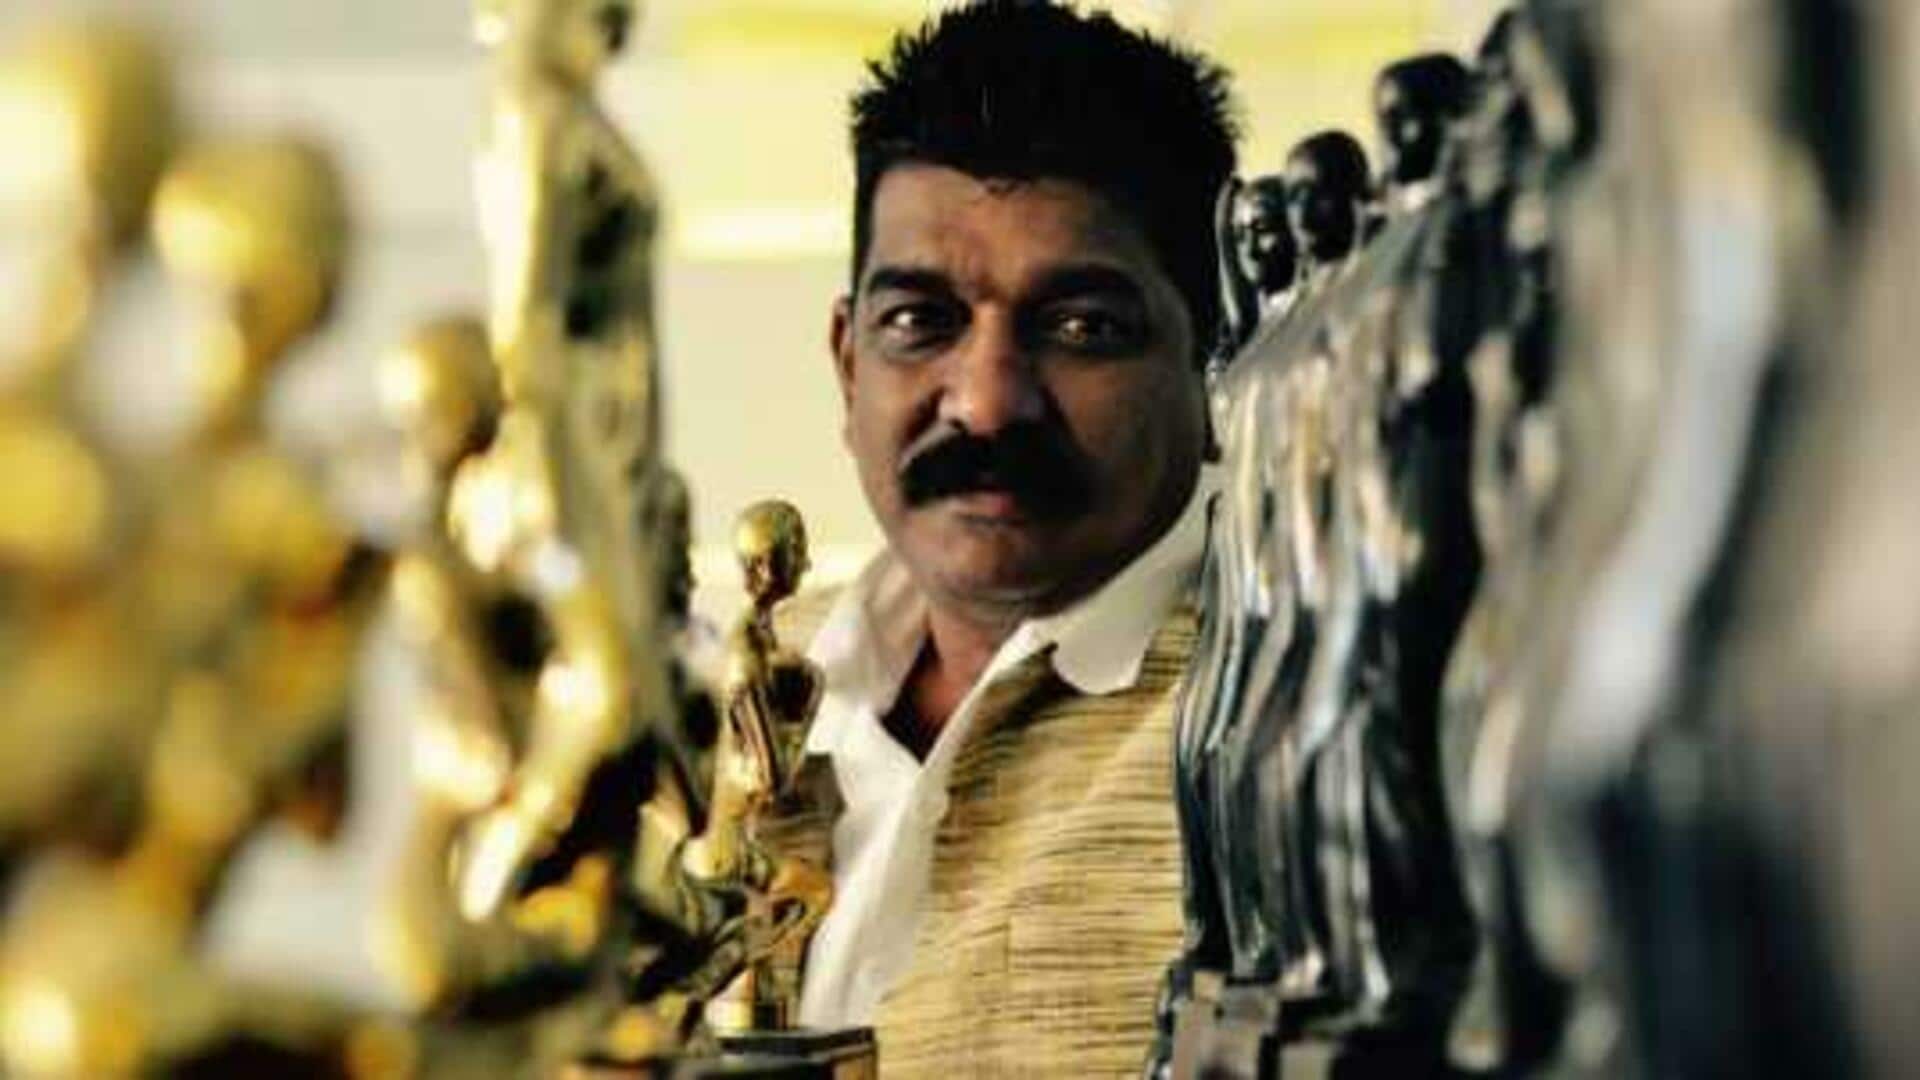 தேசிய விருது வென்ற 'லகான்' திரைப்படத்தின் ஆர்ட் டைரக்டர் திடீர் மரணம்